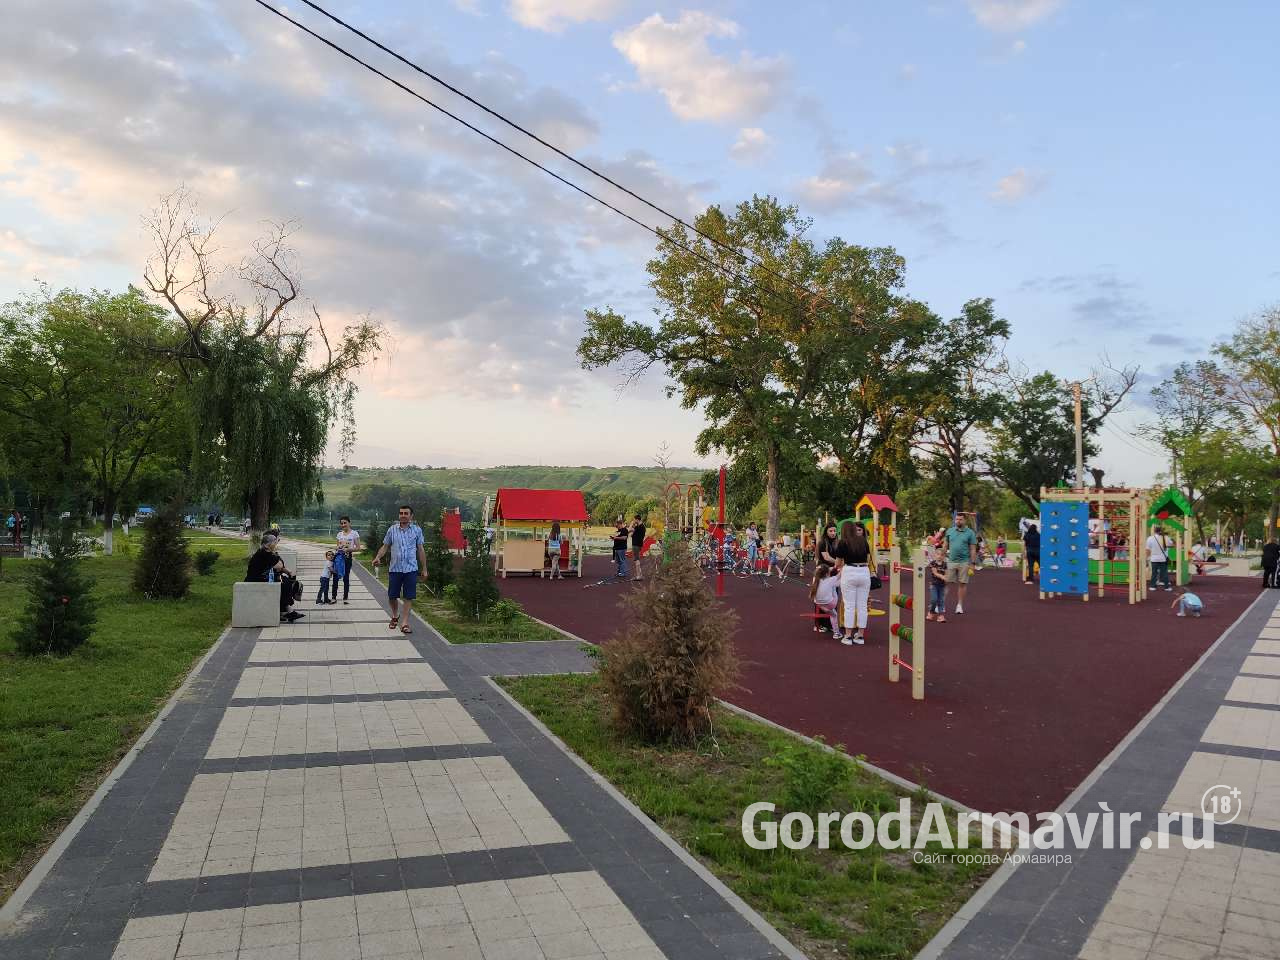 Площадка для выгула собак на 450 кв.м. будет построена  в парке «Городская Роща» в Армавире